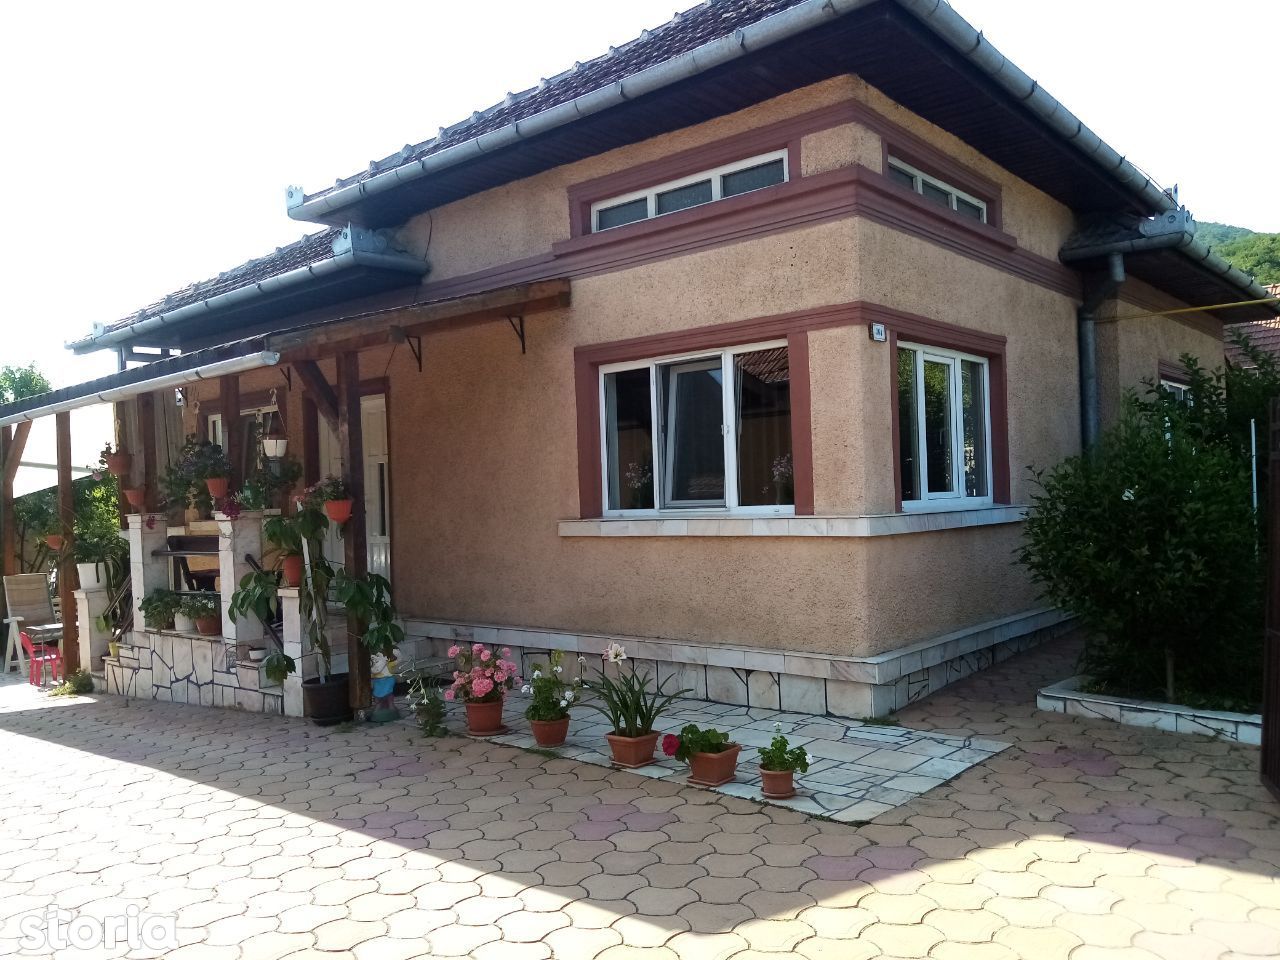 Gospodărie cu 2 case,6 camere,3 băi,teren 1.080 mp,Șoimuș